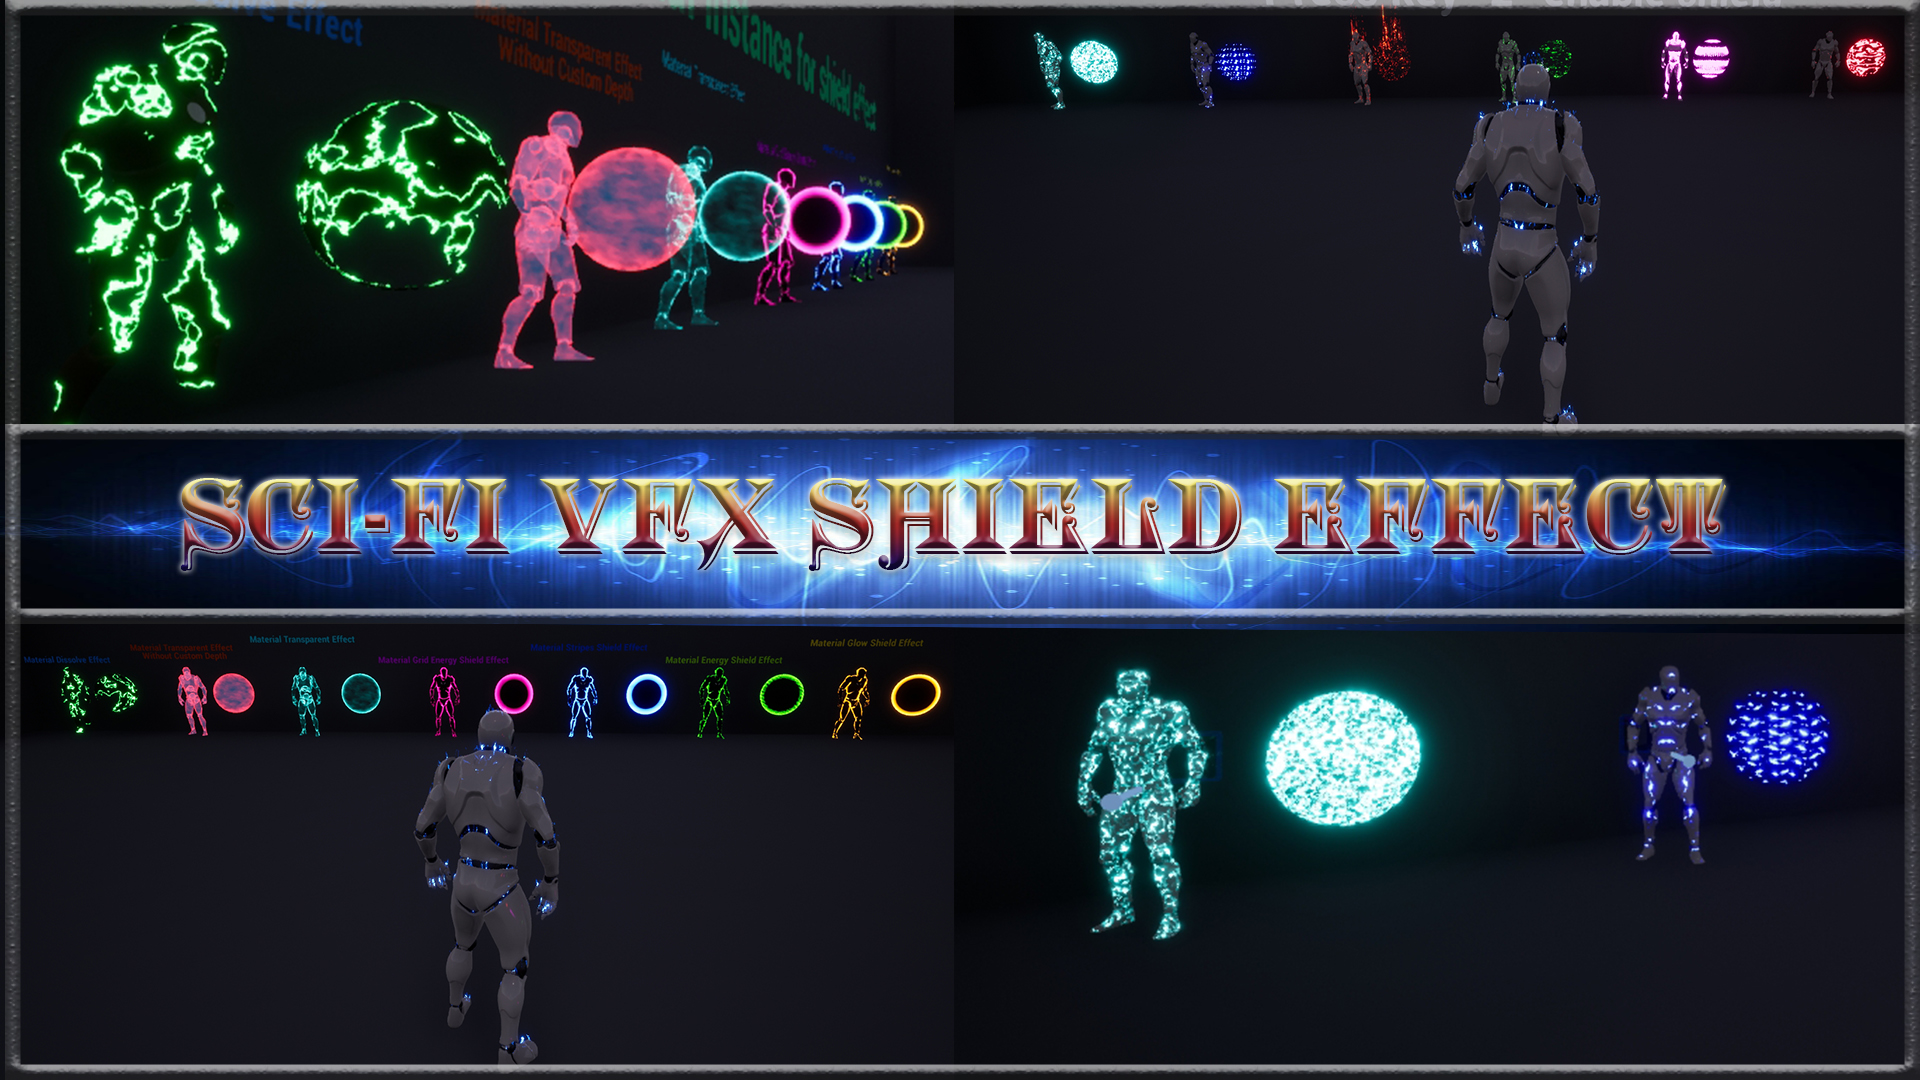 Demo Sci-Fi VFX Shield. Unreal engine 4.26-5.1